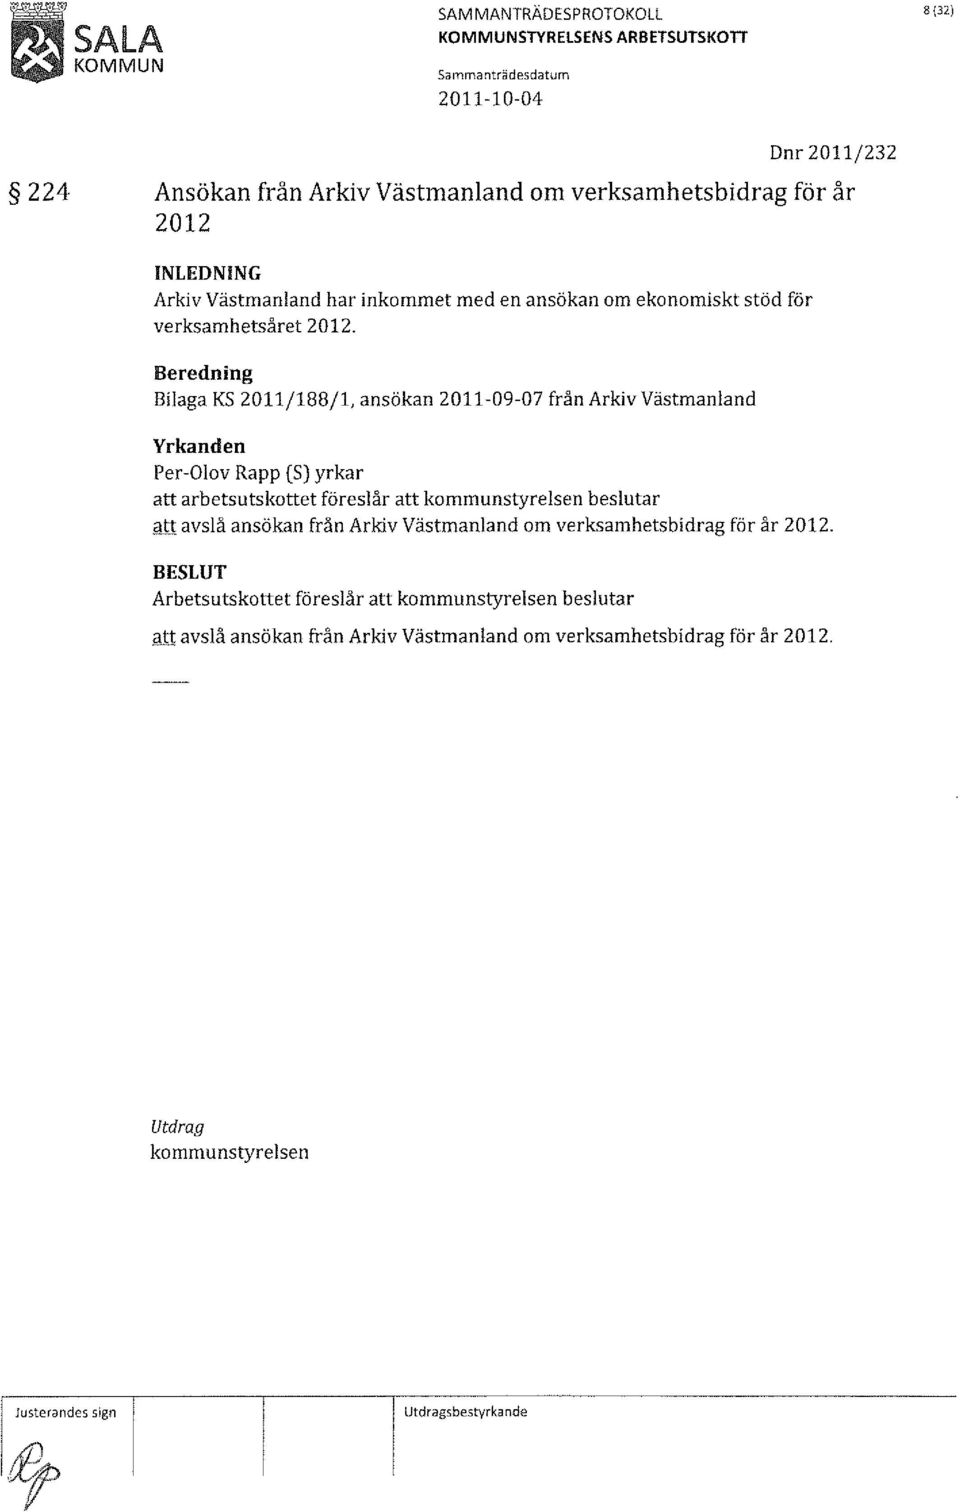 Bilaga KS 2011/188/1, ansökan 2011-09-07 från Arkiv Västmanland att arbetsutskottet föreslår att att avslå ansökan från